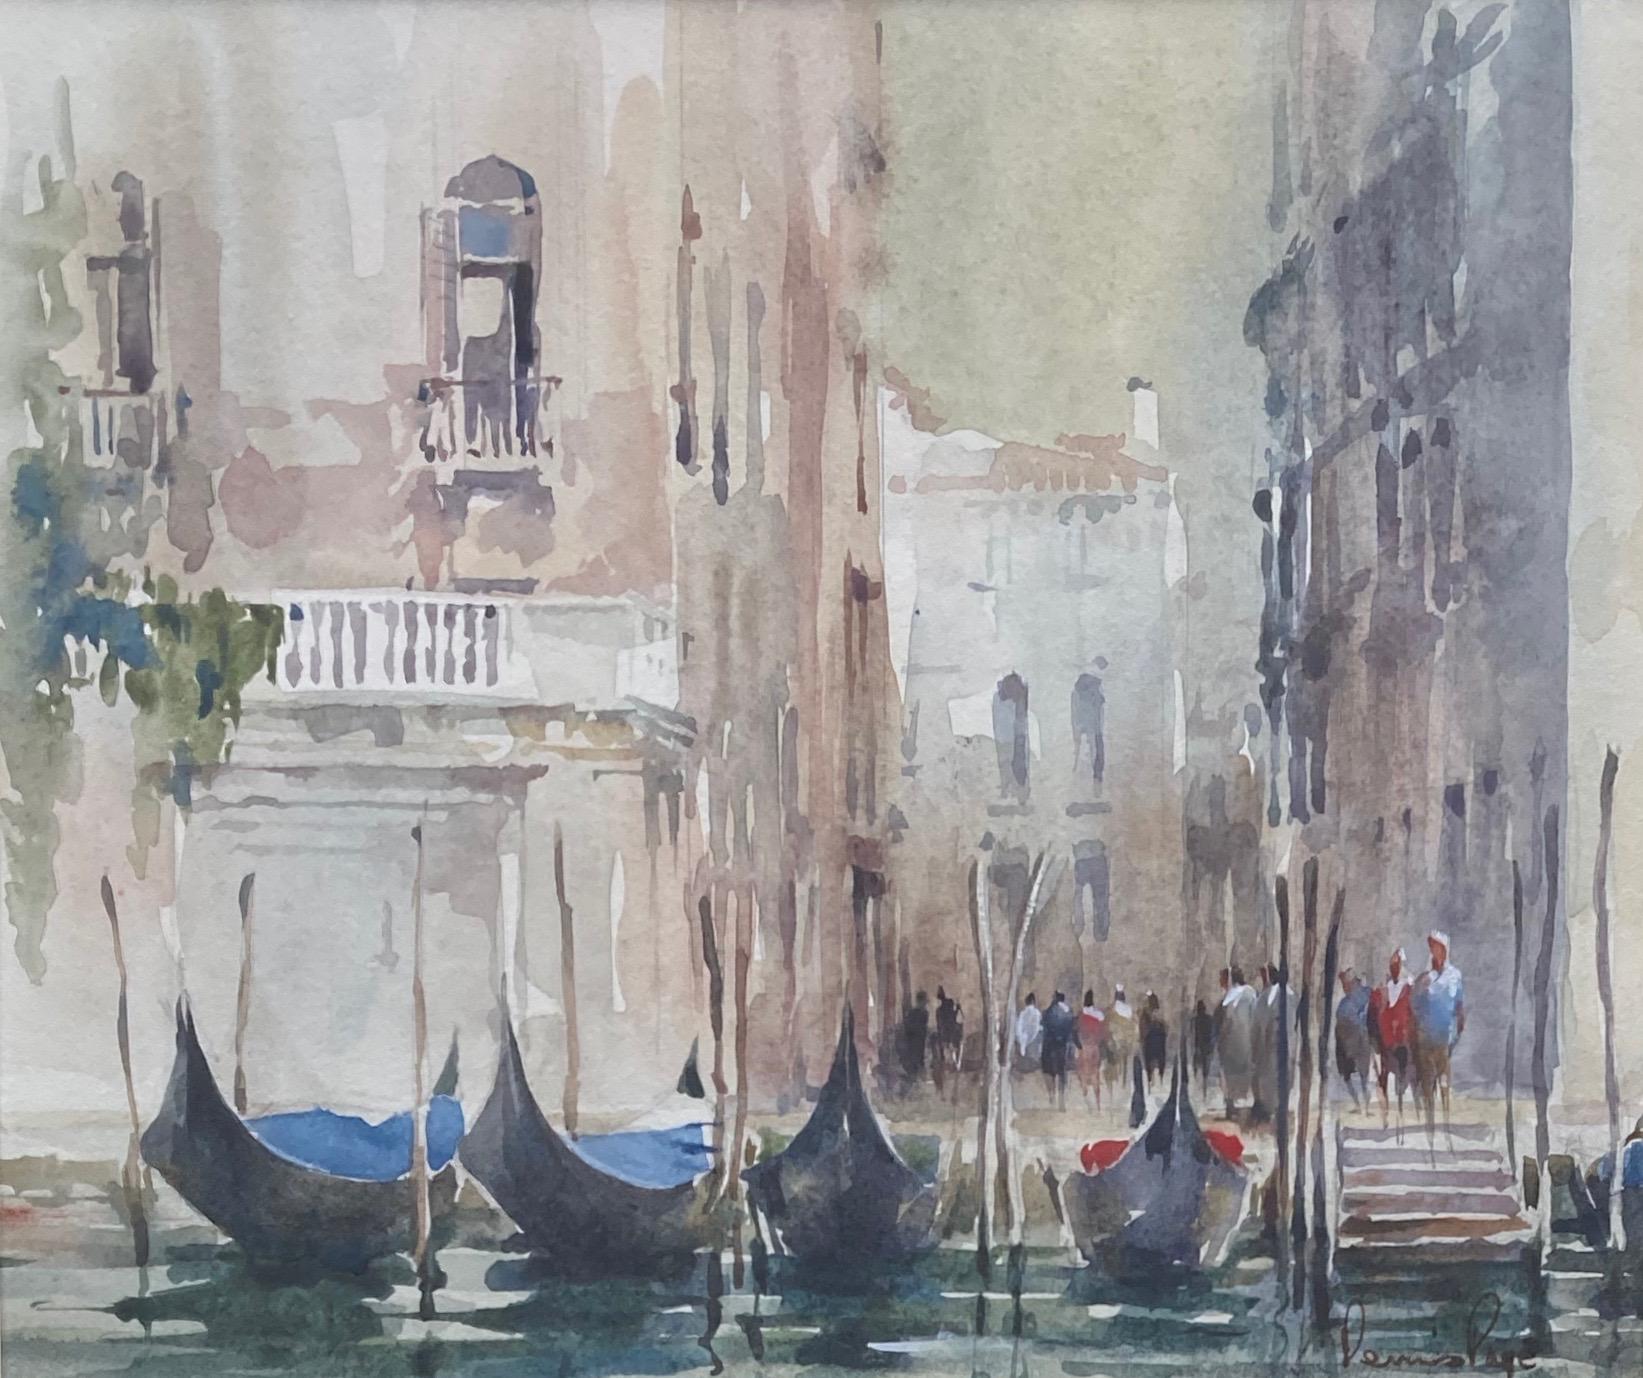 Aquarelle du canal de Venise, Angleterre - Moderne Art par dennis page